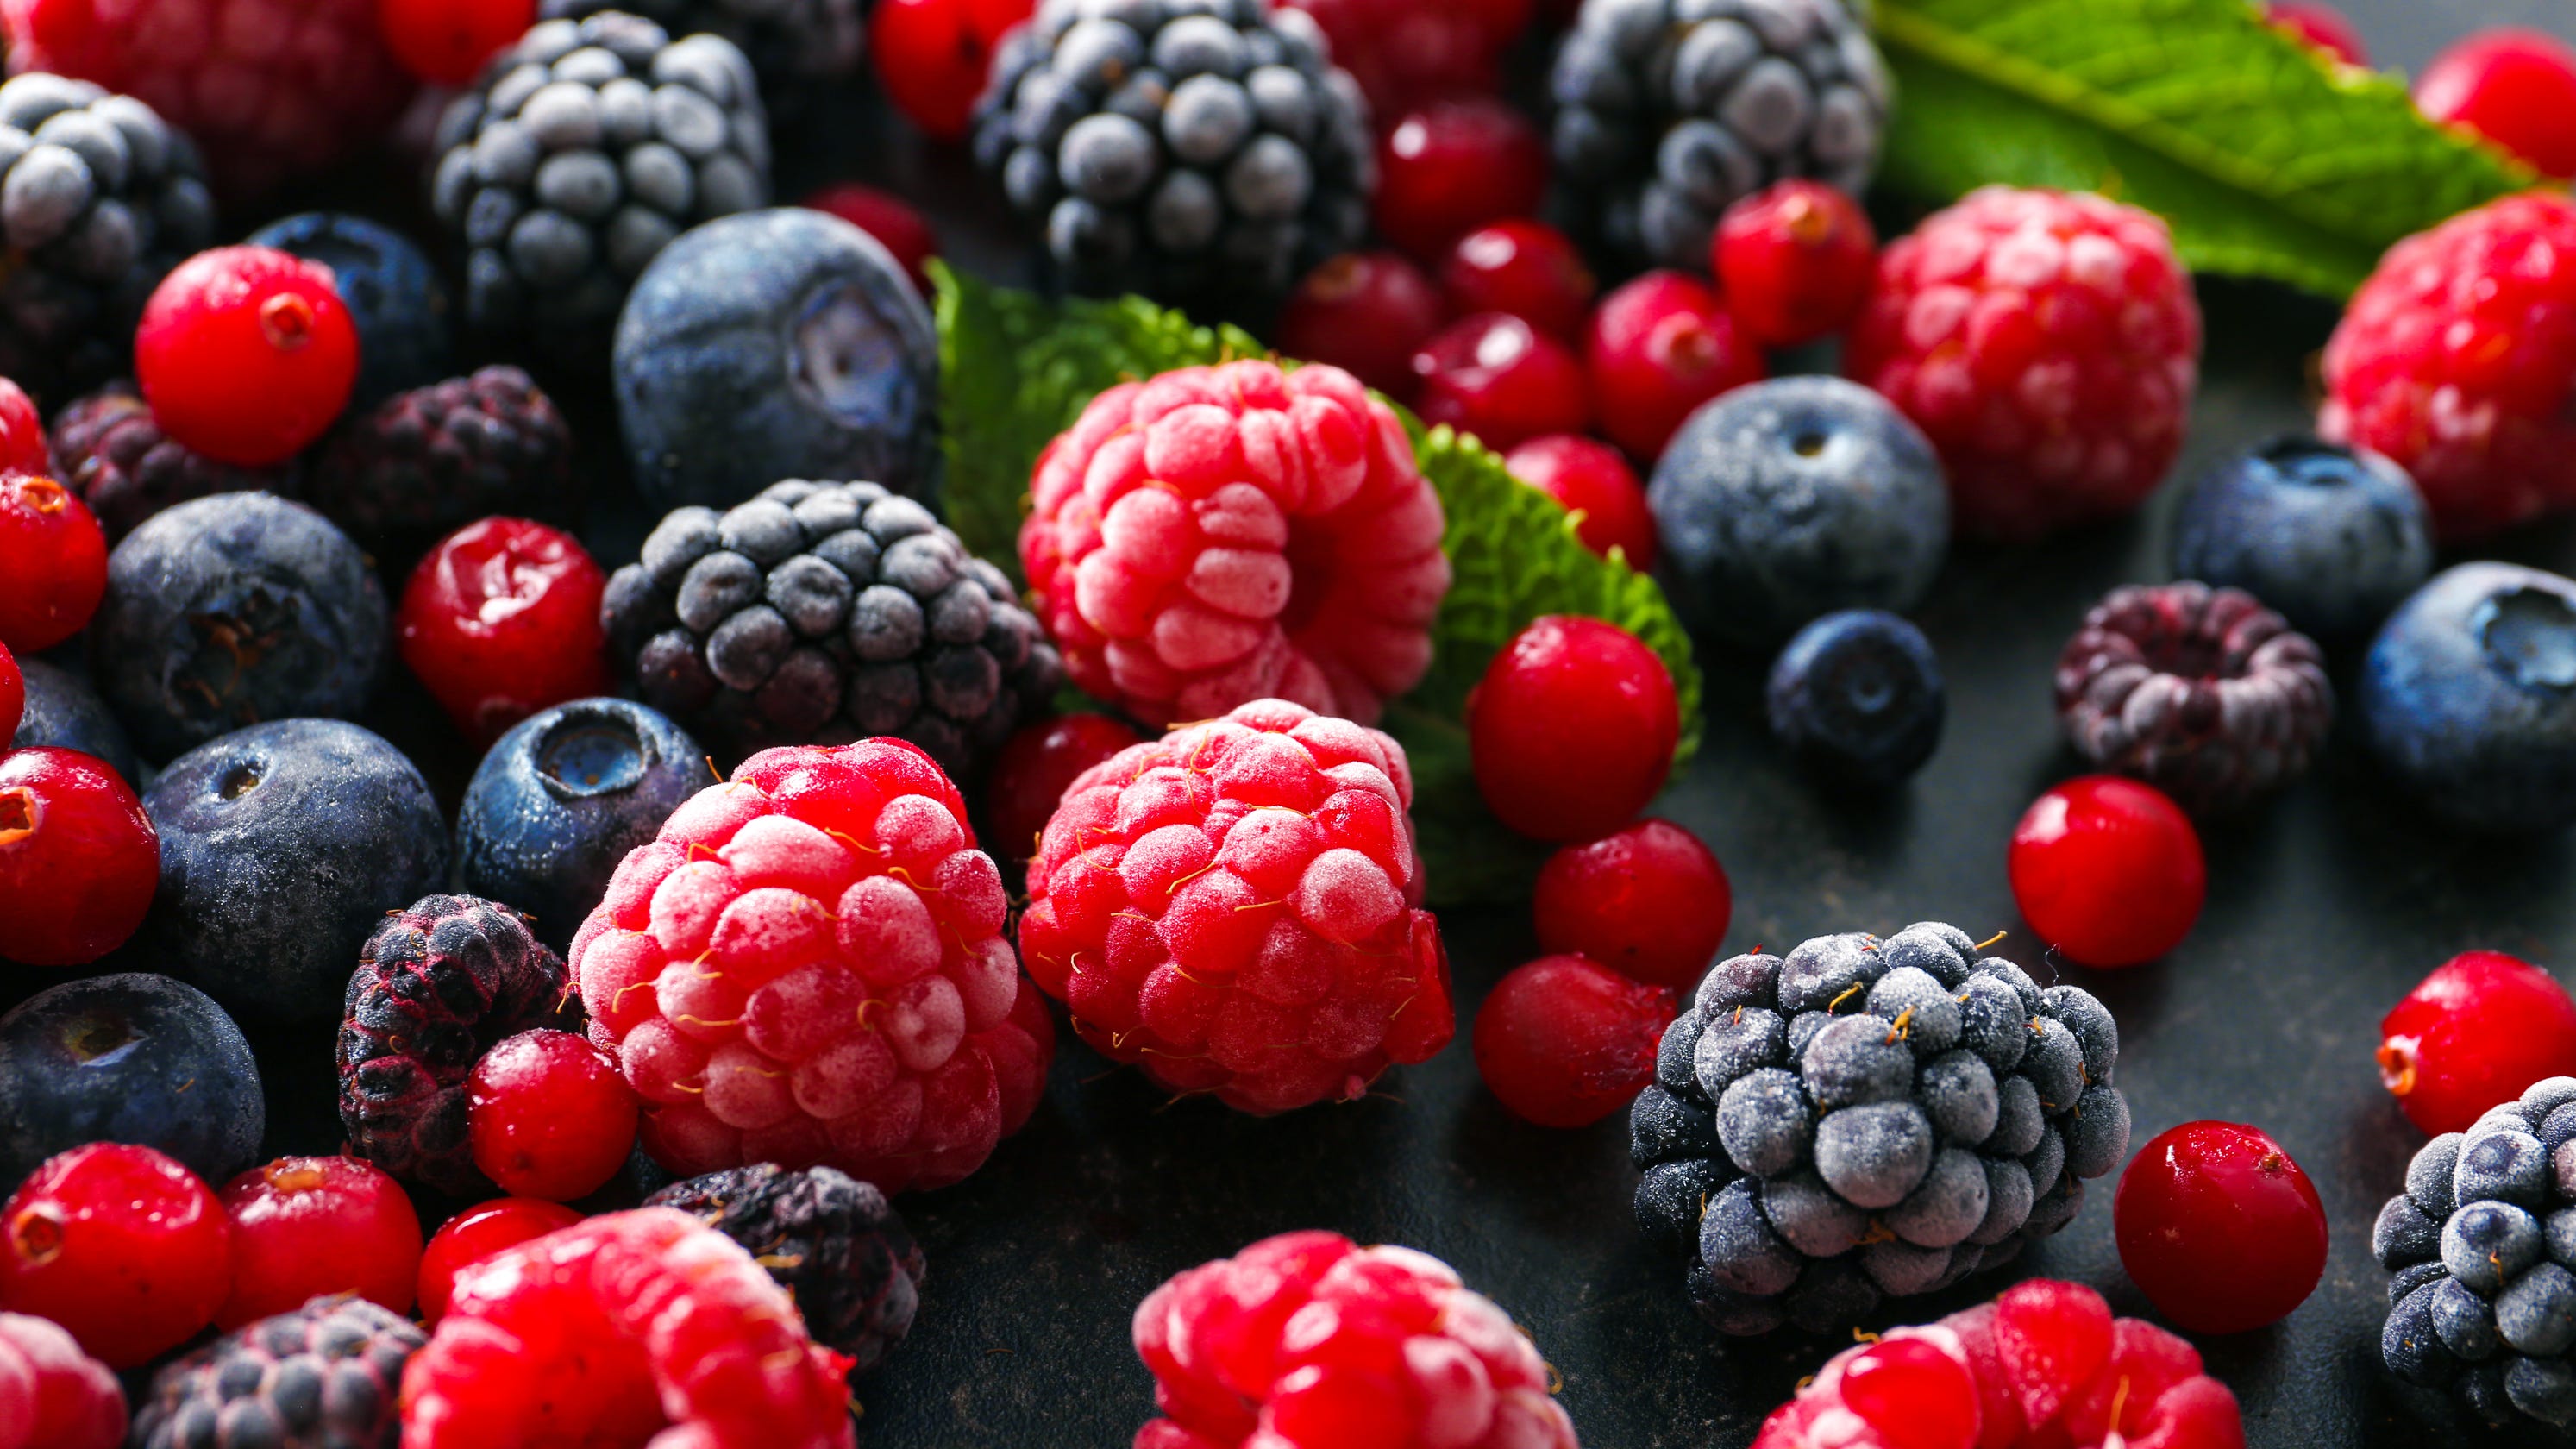 Food Recall ALERT Frozen berries